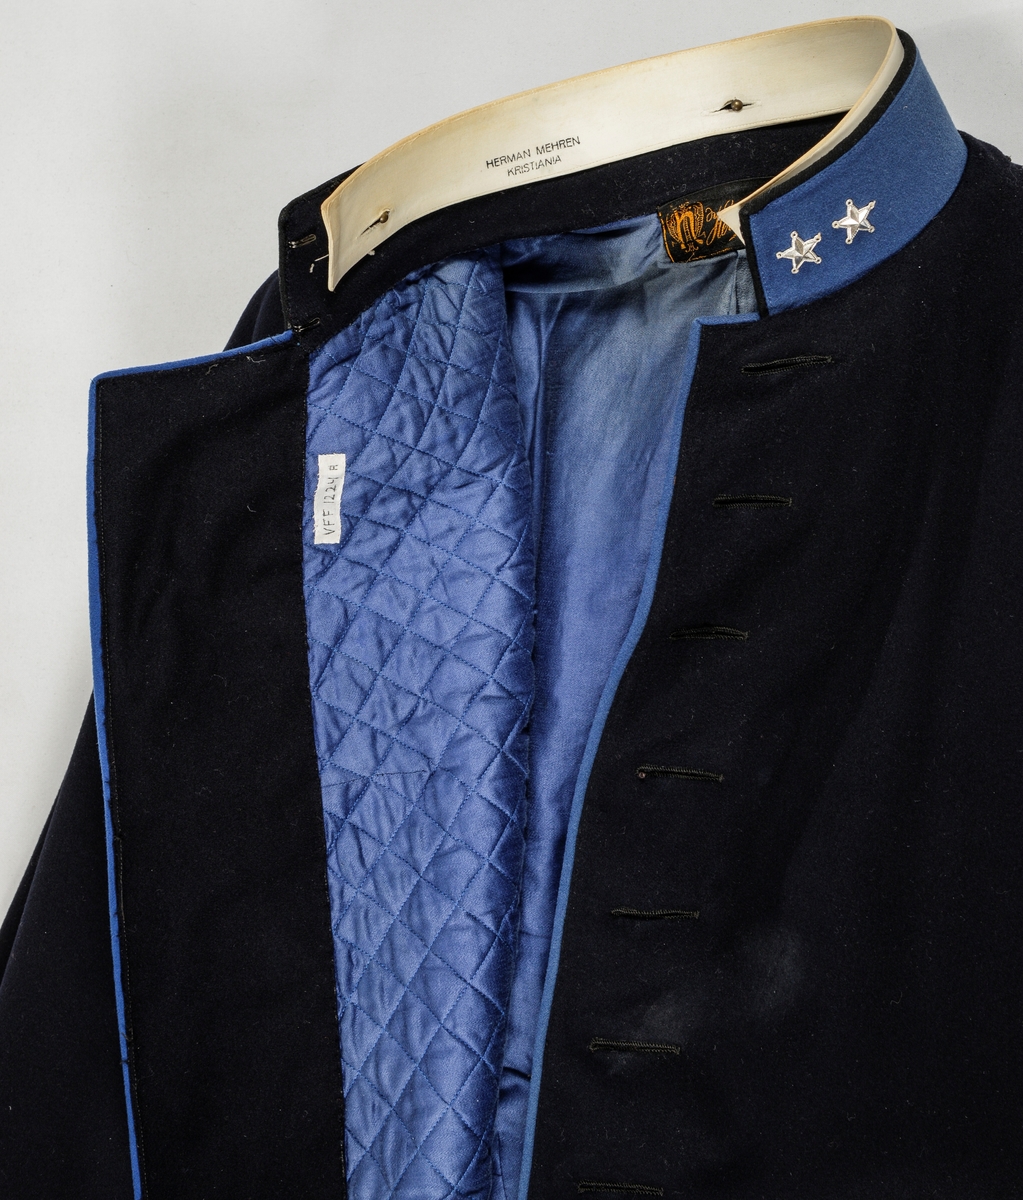 Uniform, løyntnantsuniform, i svart klede med kantar i blått klede. Registreringa inneheld A. Trøye, B Bukse, C Lue, D og E Pålettar. Sjå nærare fyldig registrering på arkivkort frå 1969.